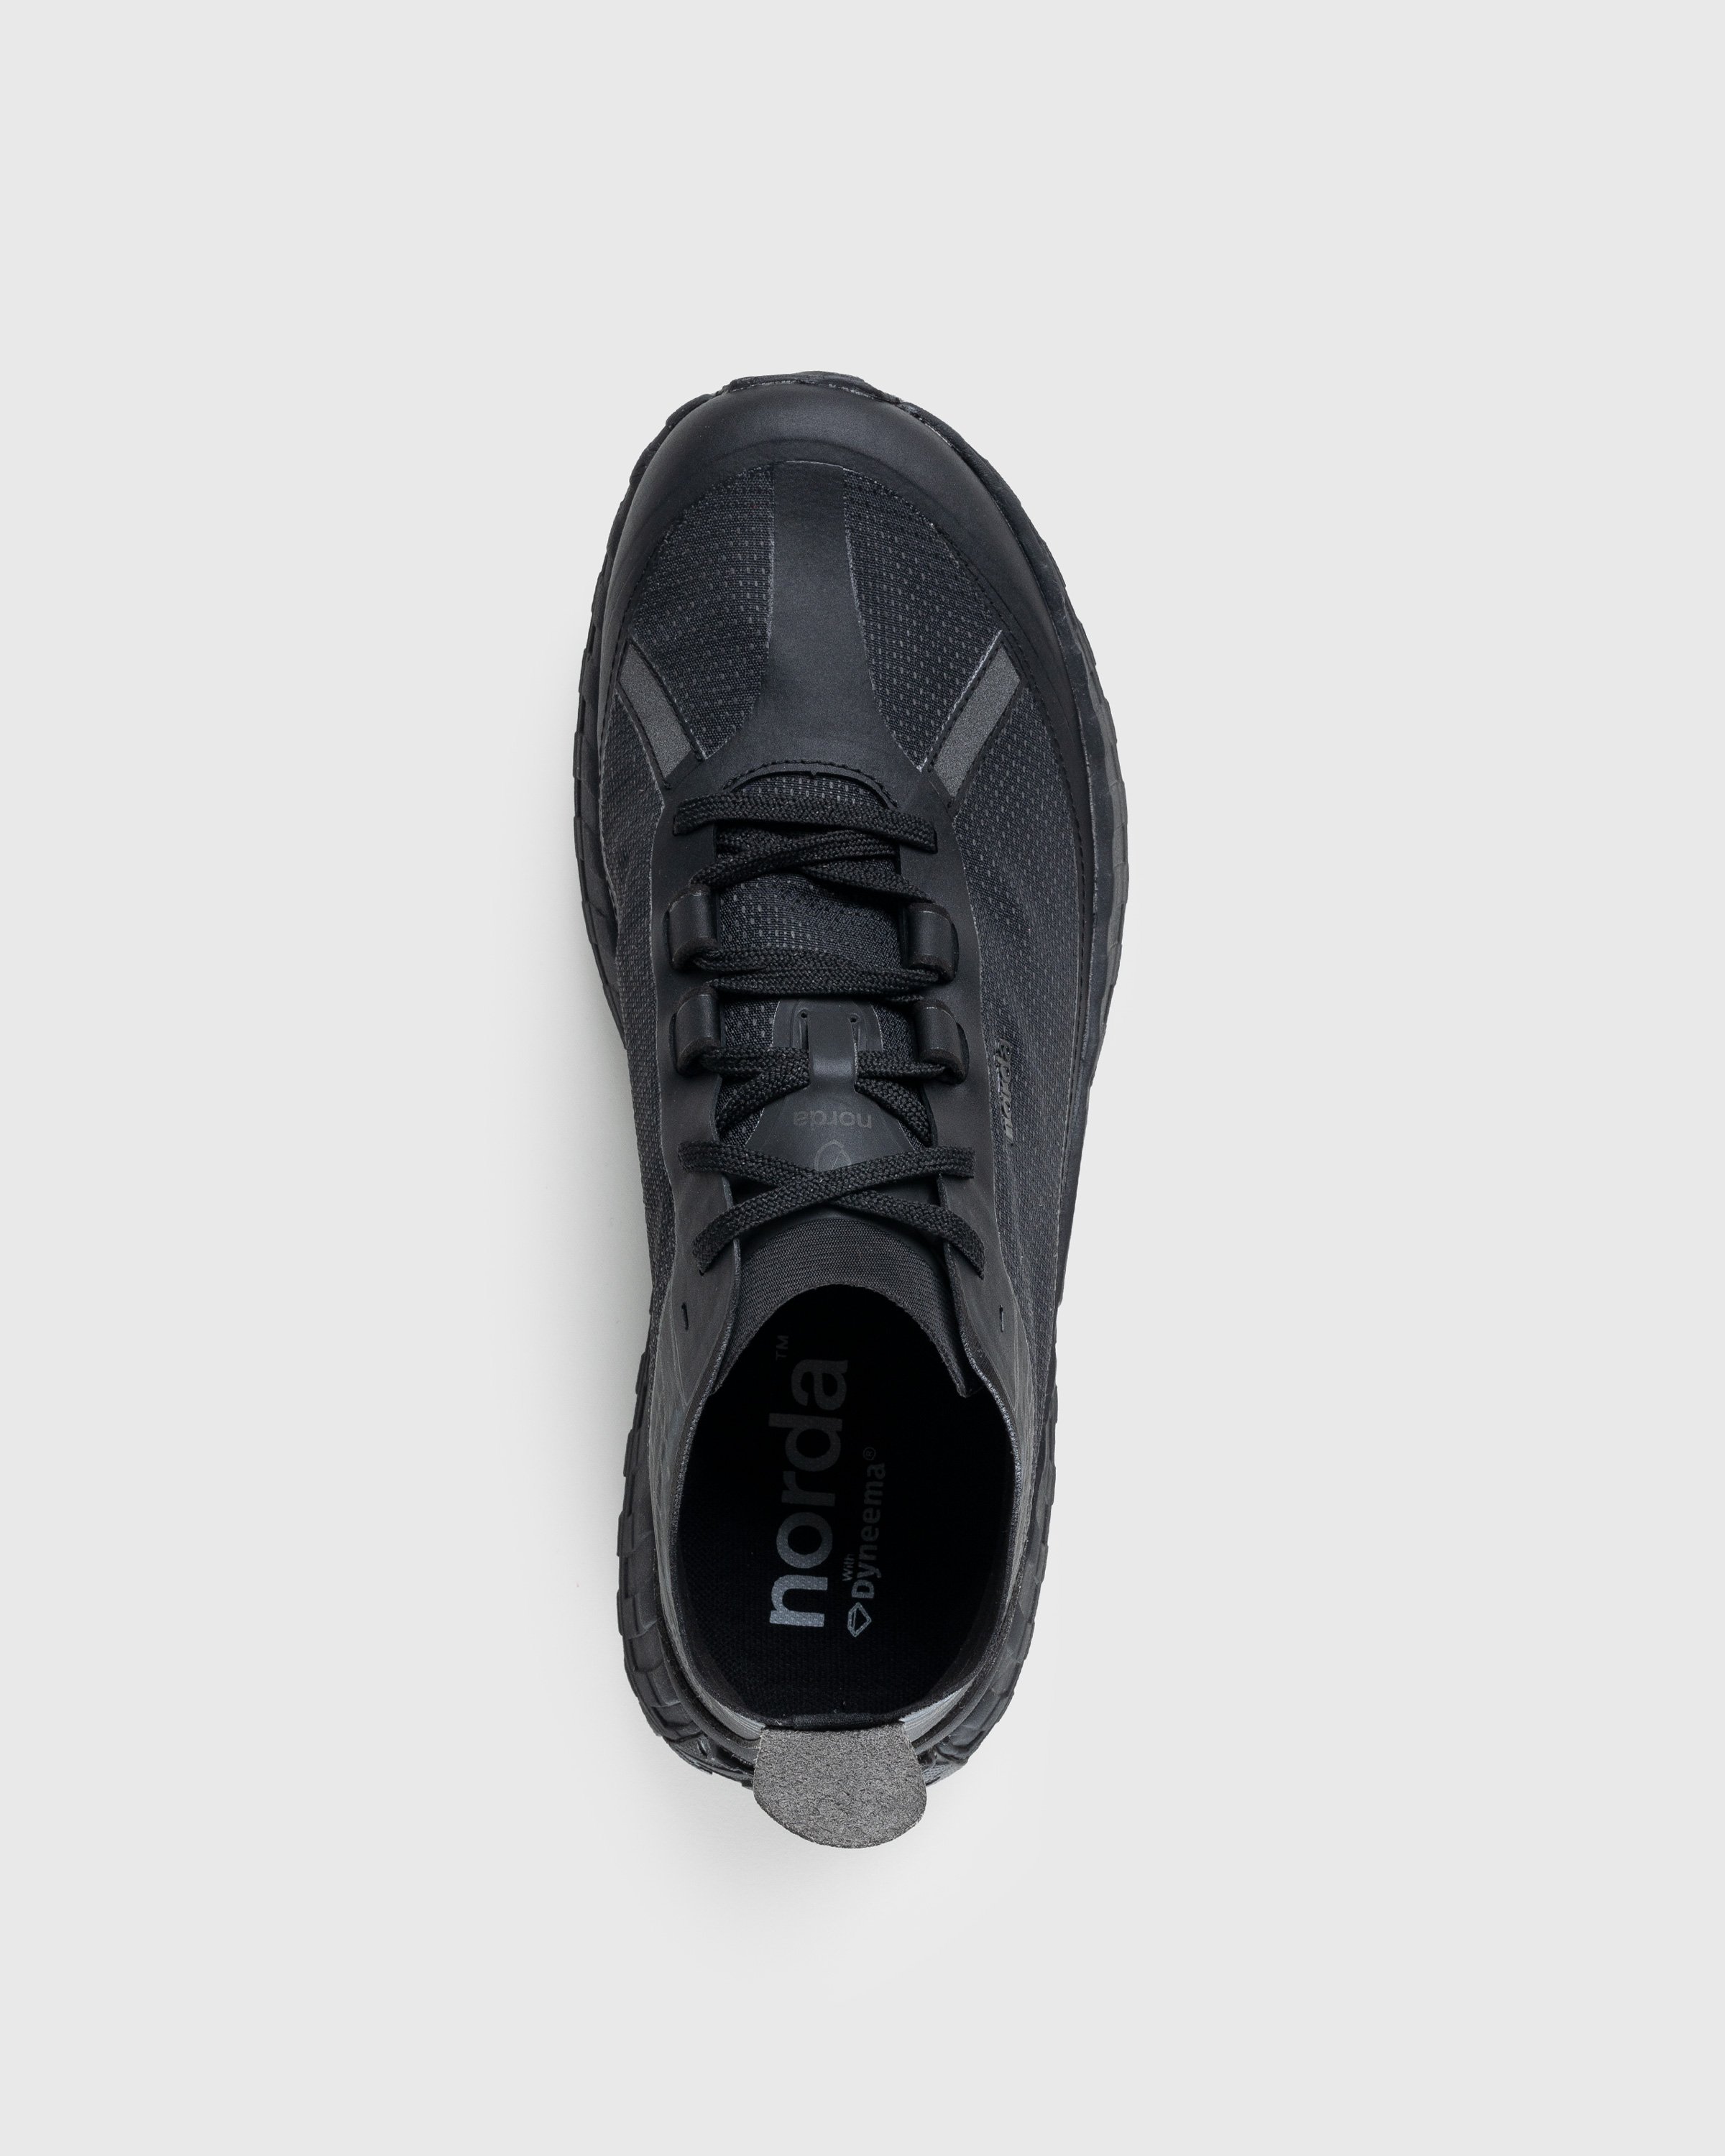 Norda - 001 M Stealth Black - Footwear - Black - Image 5